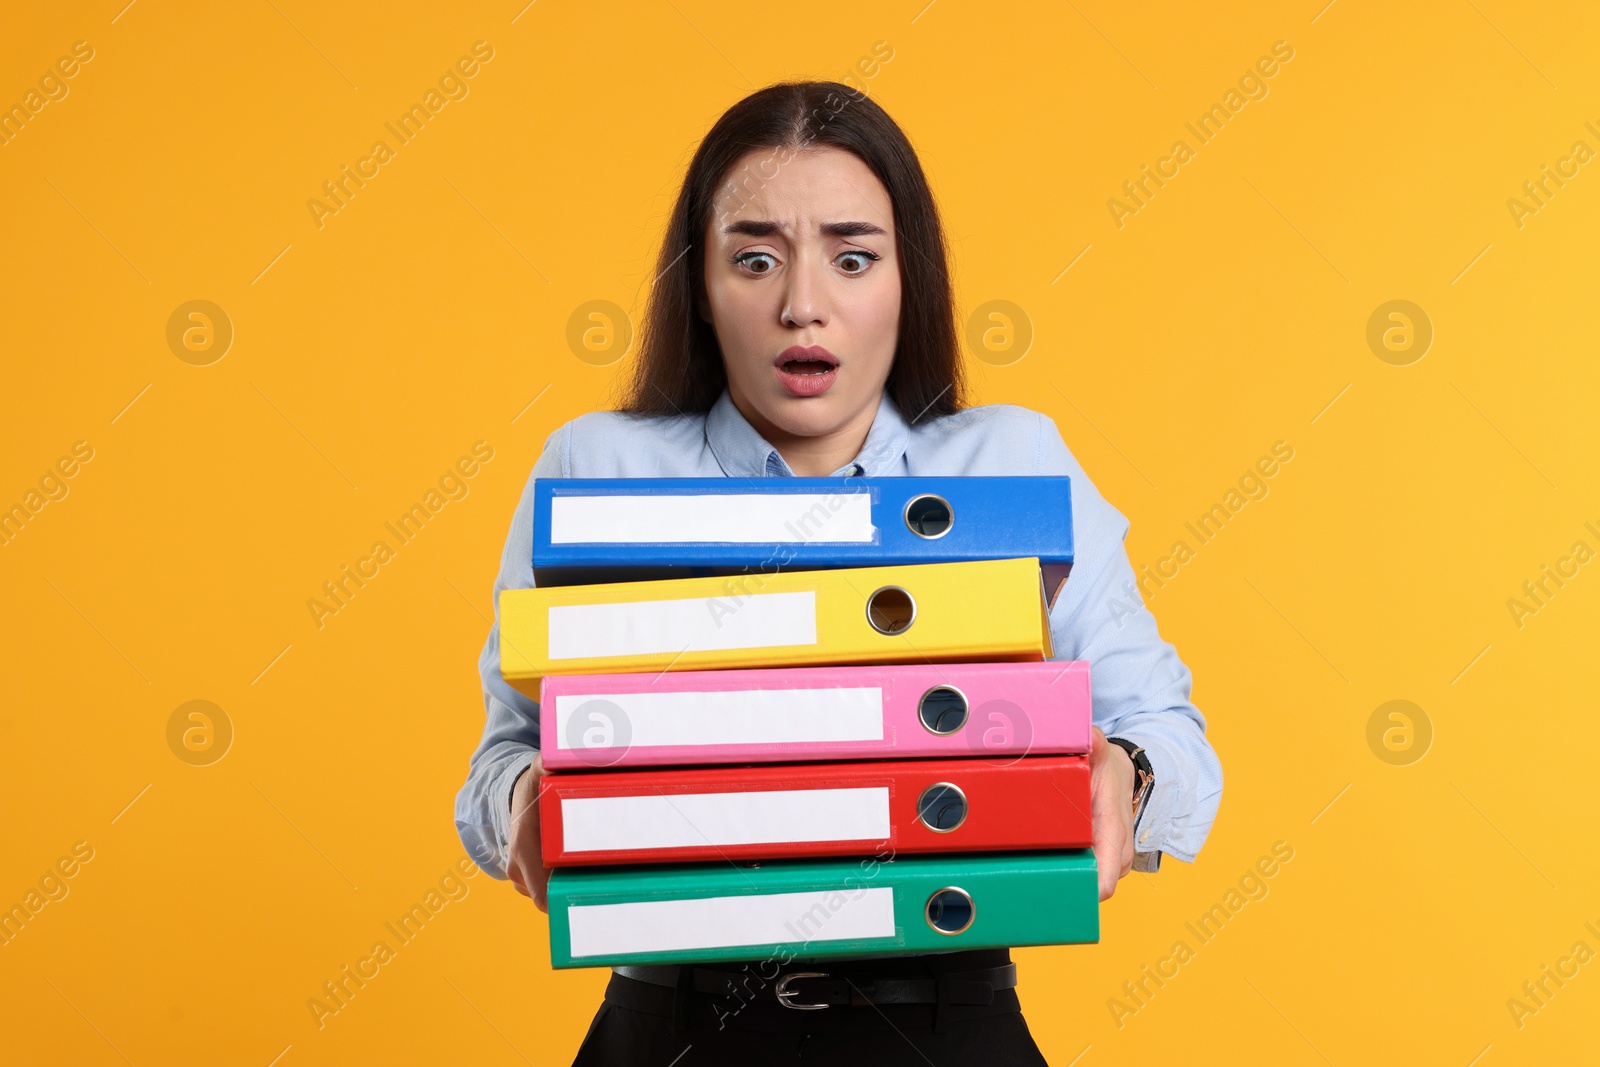 Photo of Shocked woman with folders on orange background